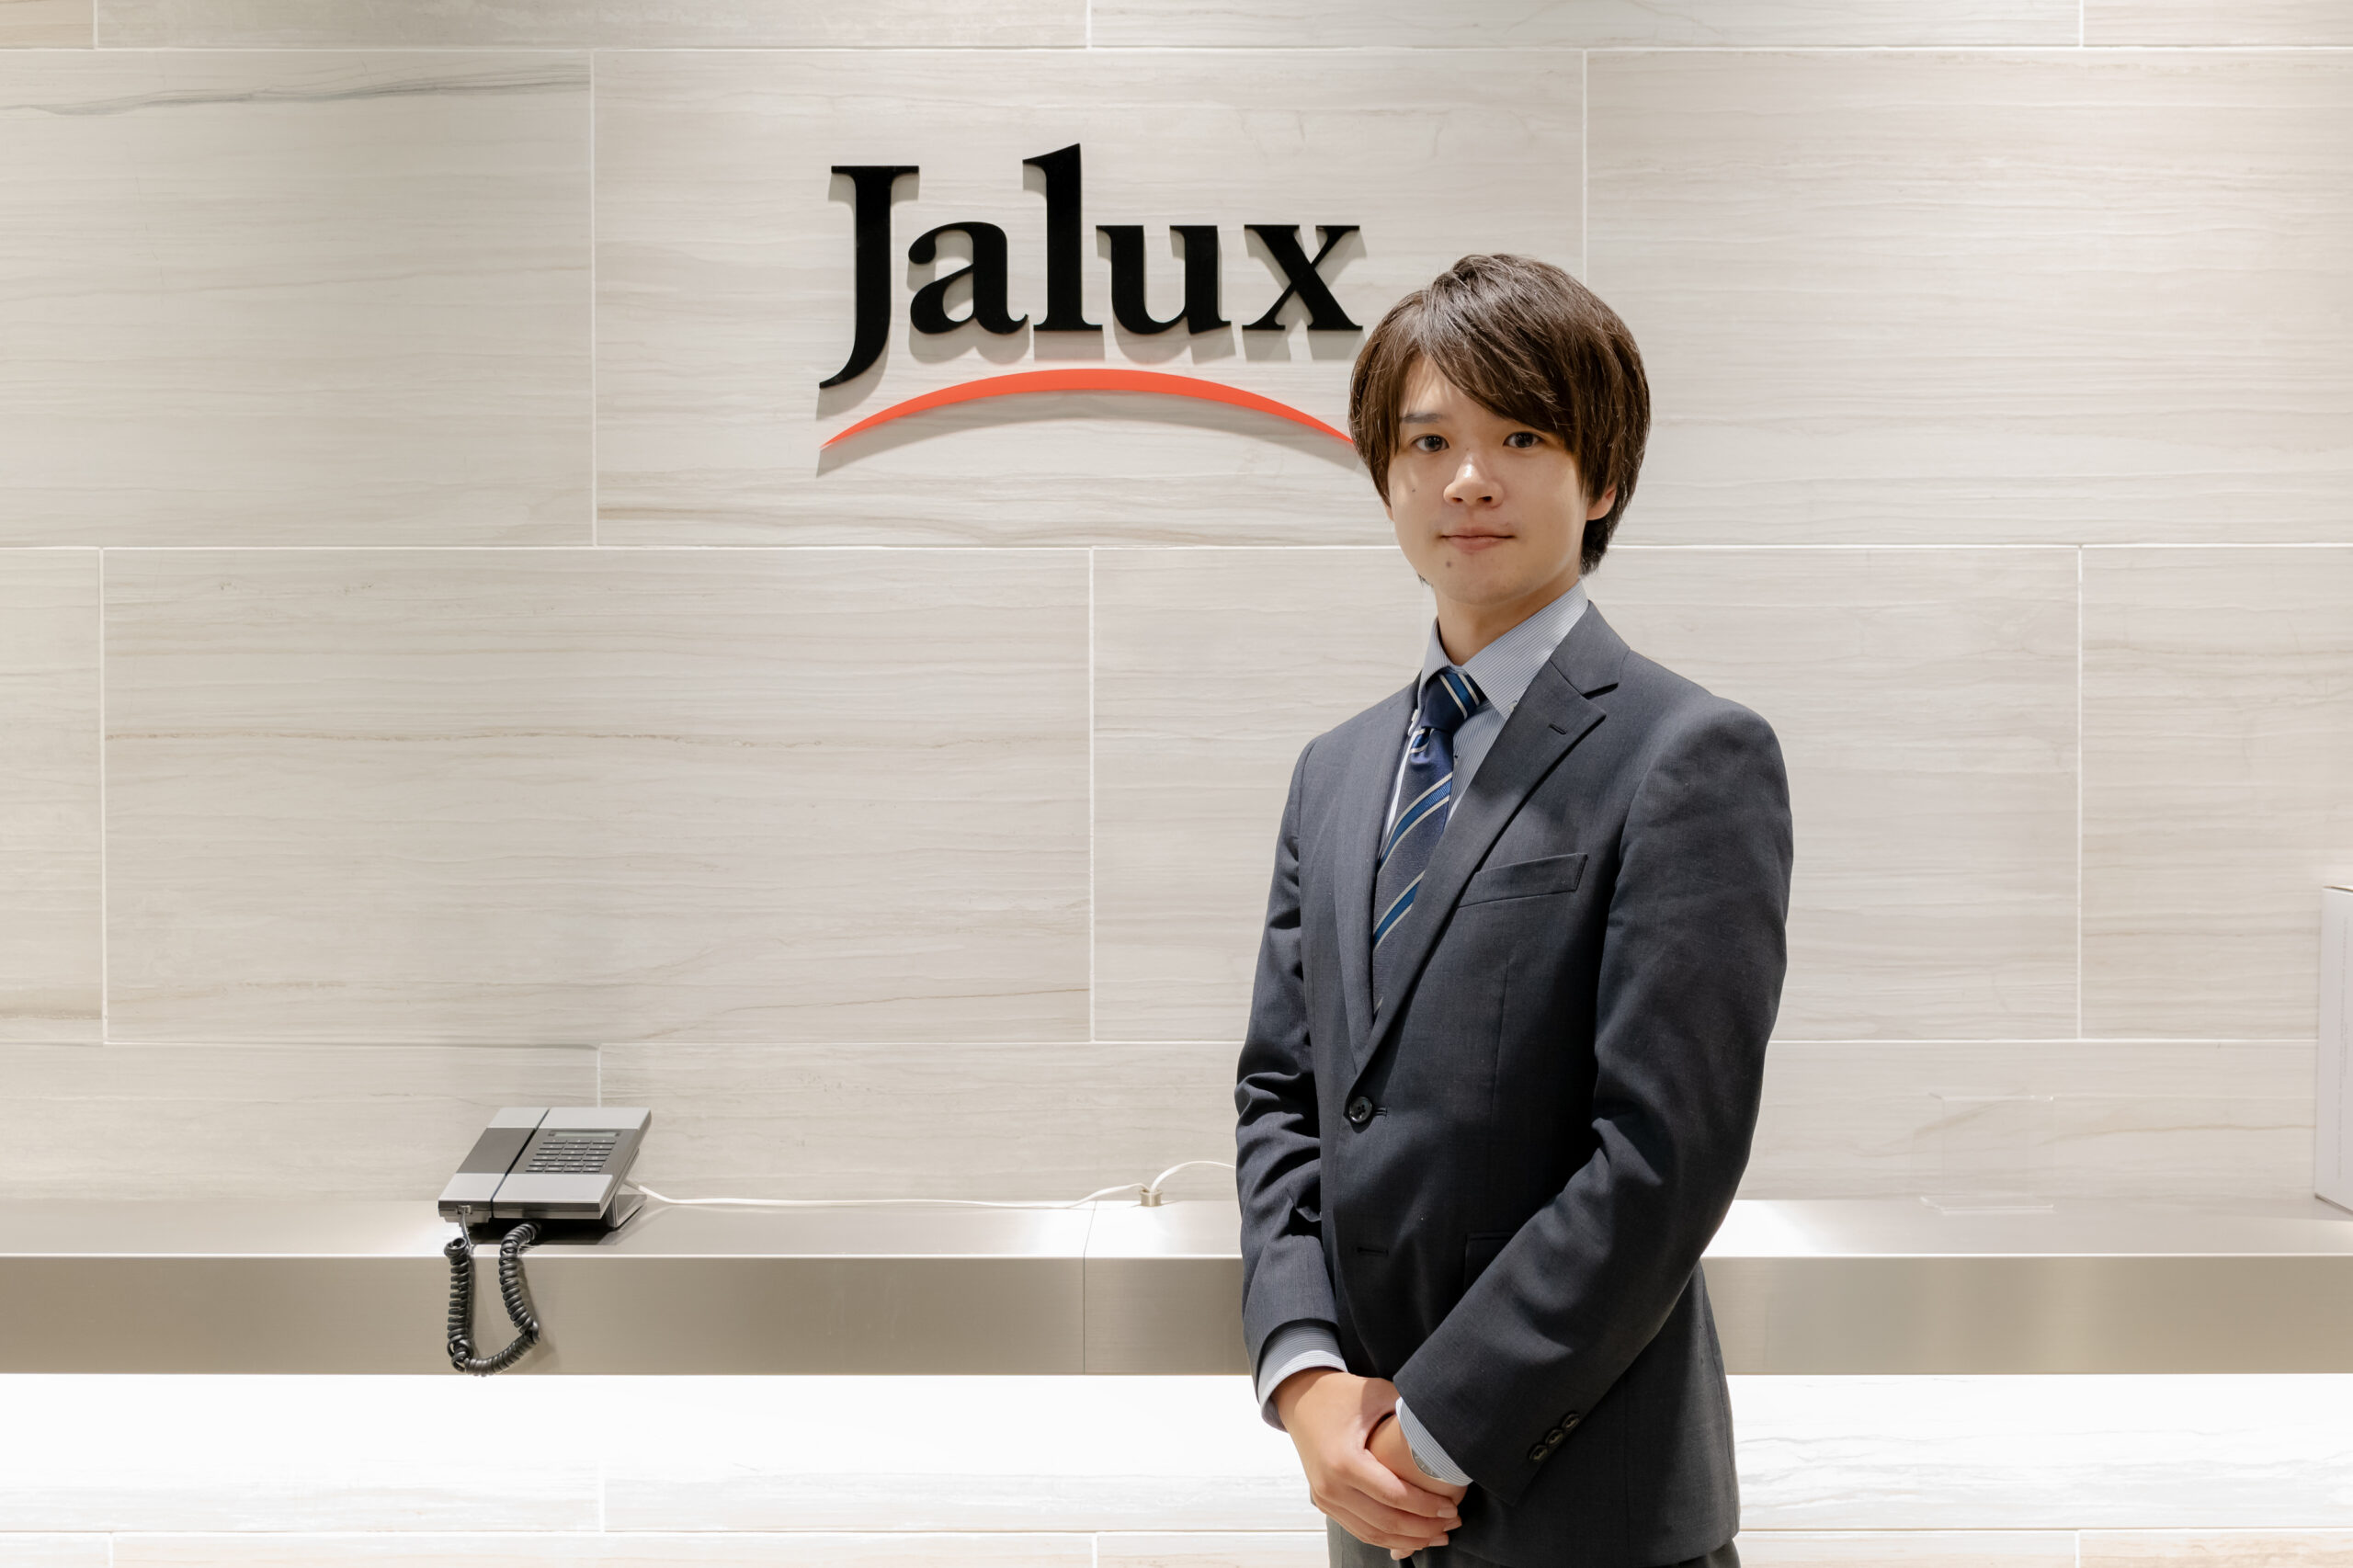 航空事業の強みを活かして宇宙ビジネスへ進出、3本柱の構想とは―株式会社JALUX